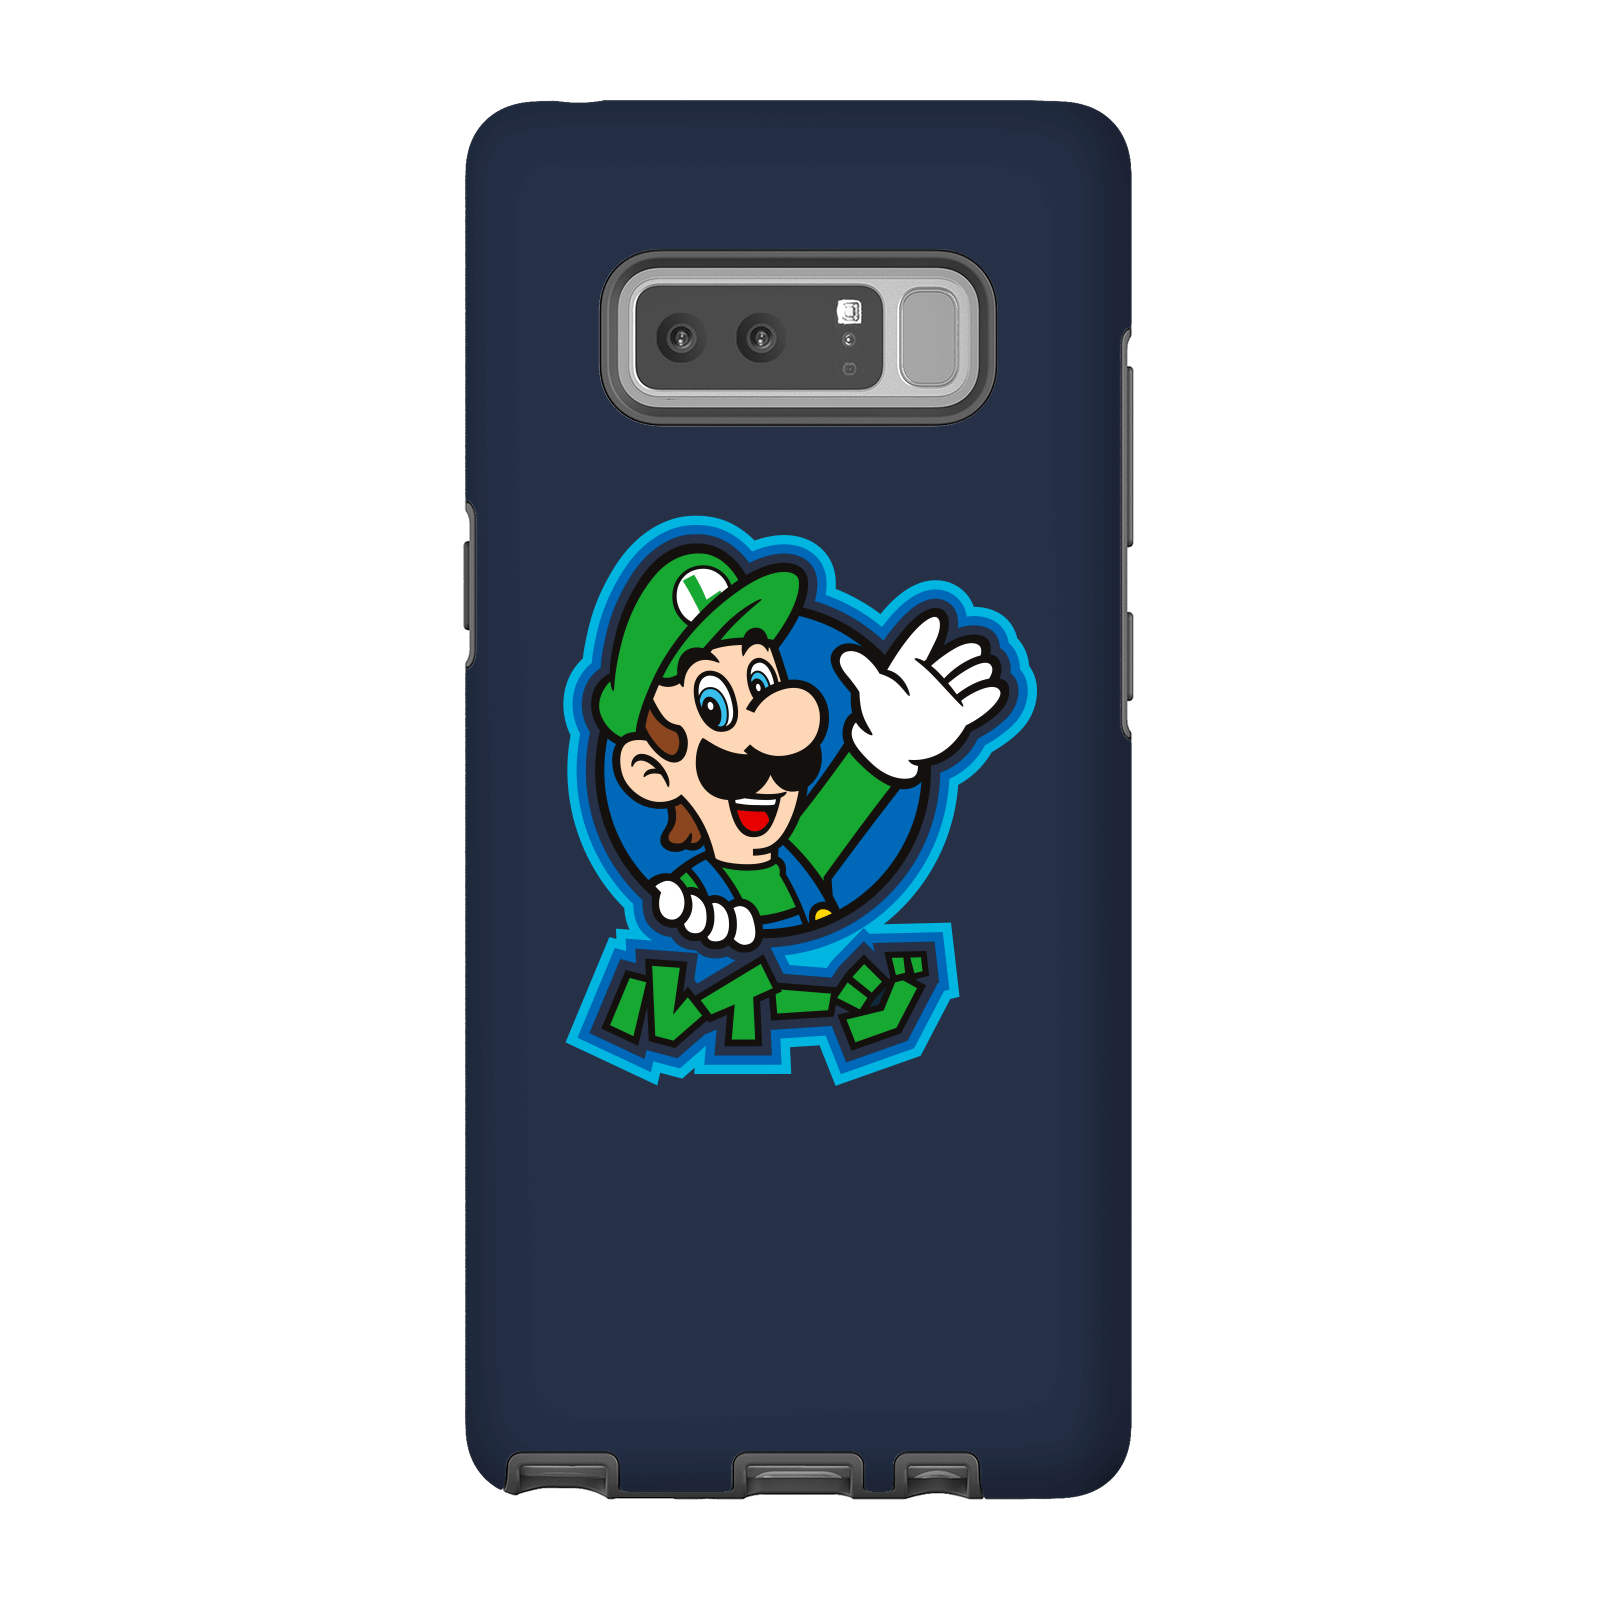 Nintendo Super Mario Luigi Kanji Phone Case - Samsung Note 8 - Tough Case - Gloss